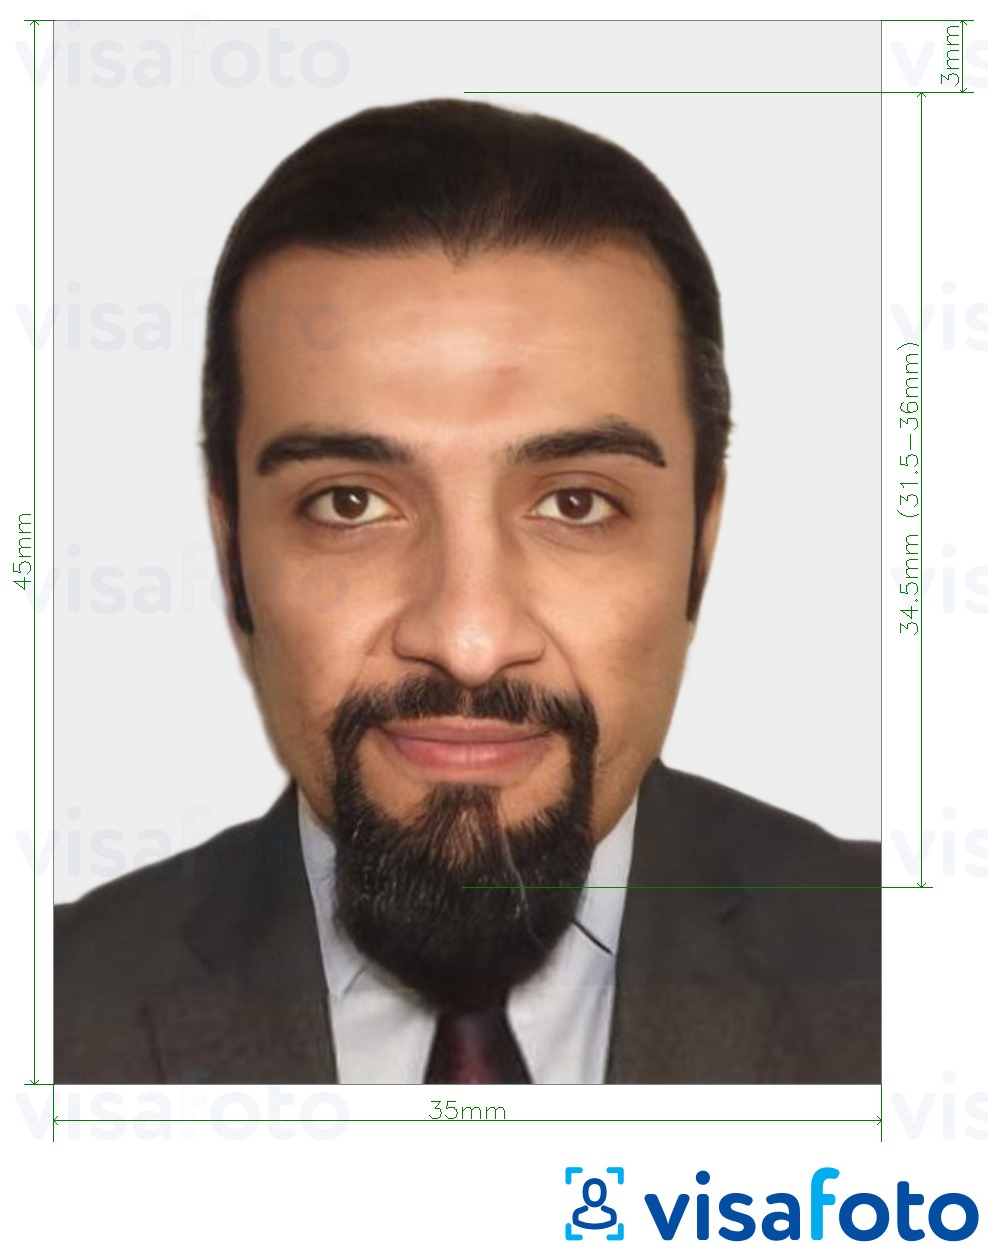 Contoh dari foto untuk Visa Mauritania 35x45 mm (3,5x4,5 cm) dengan ukuran spesifikasi yang tepat